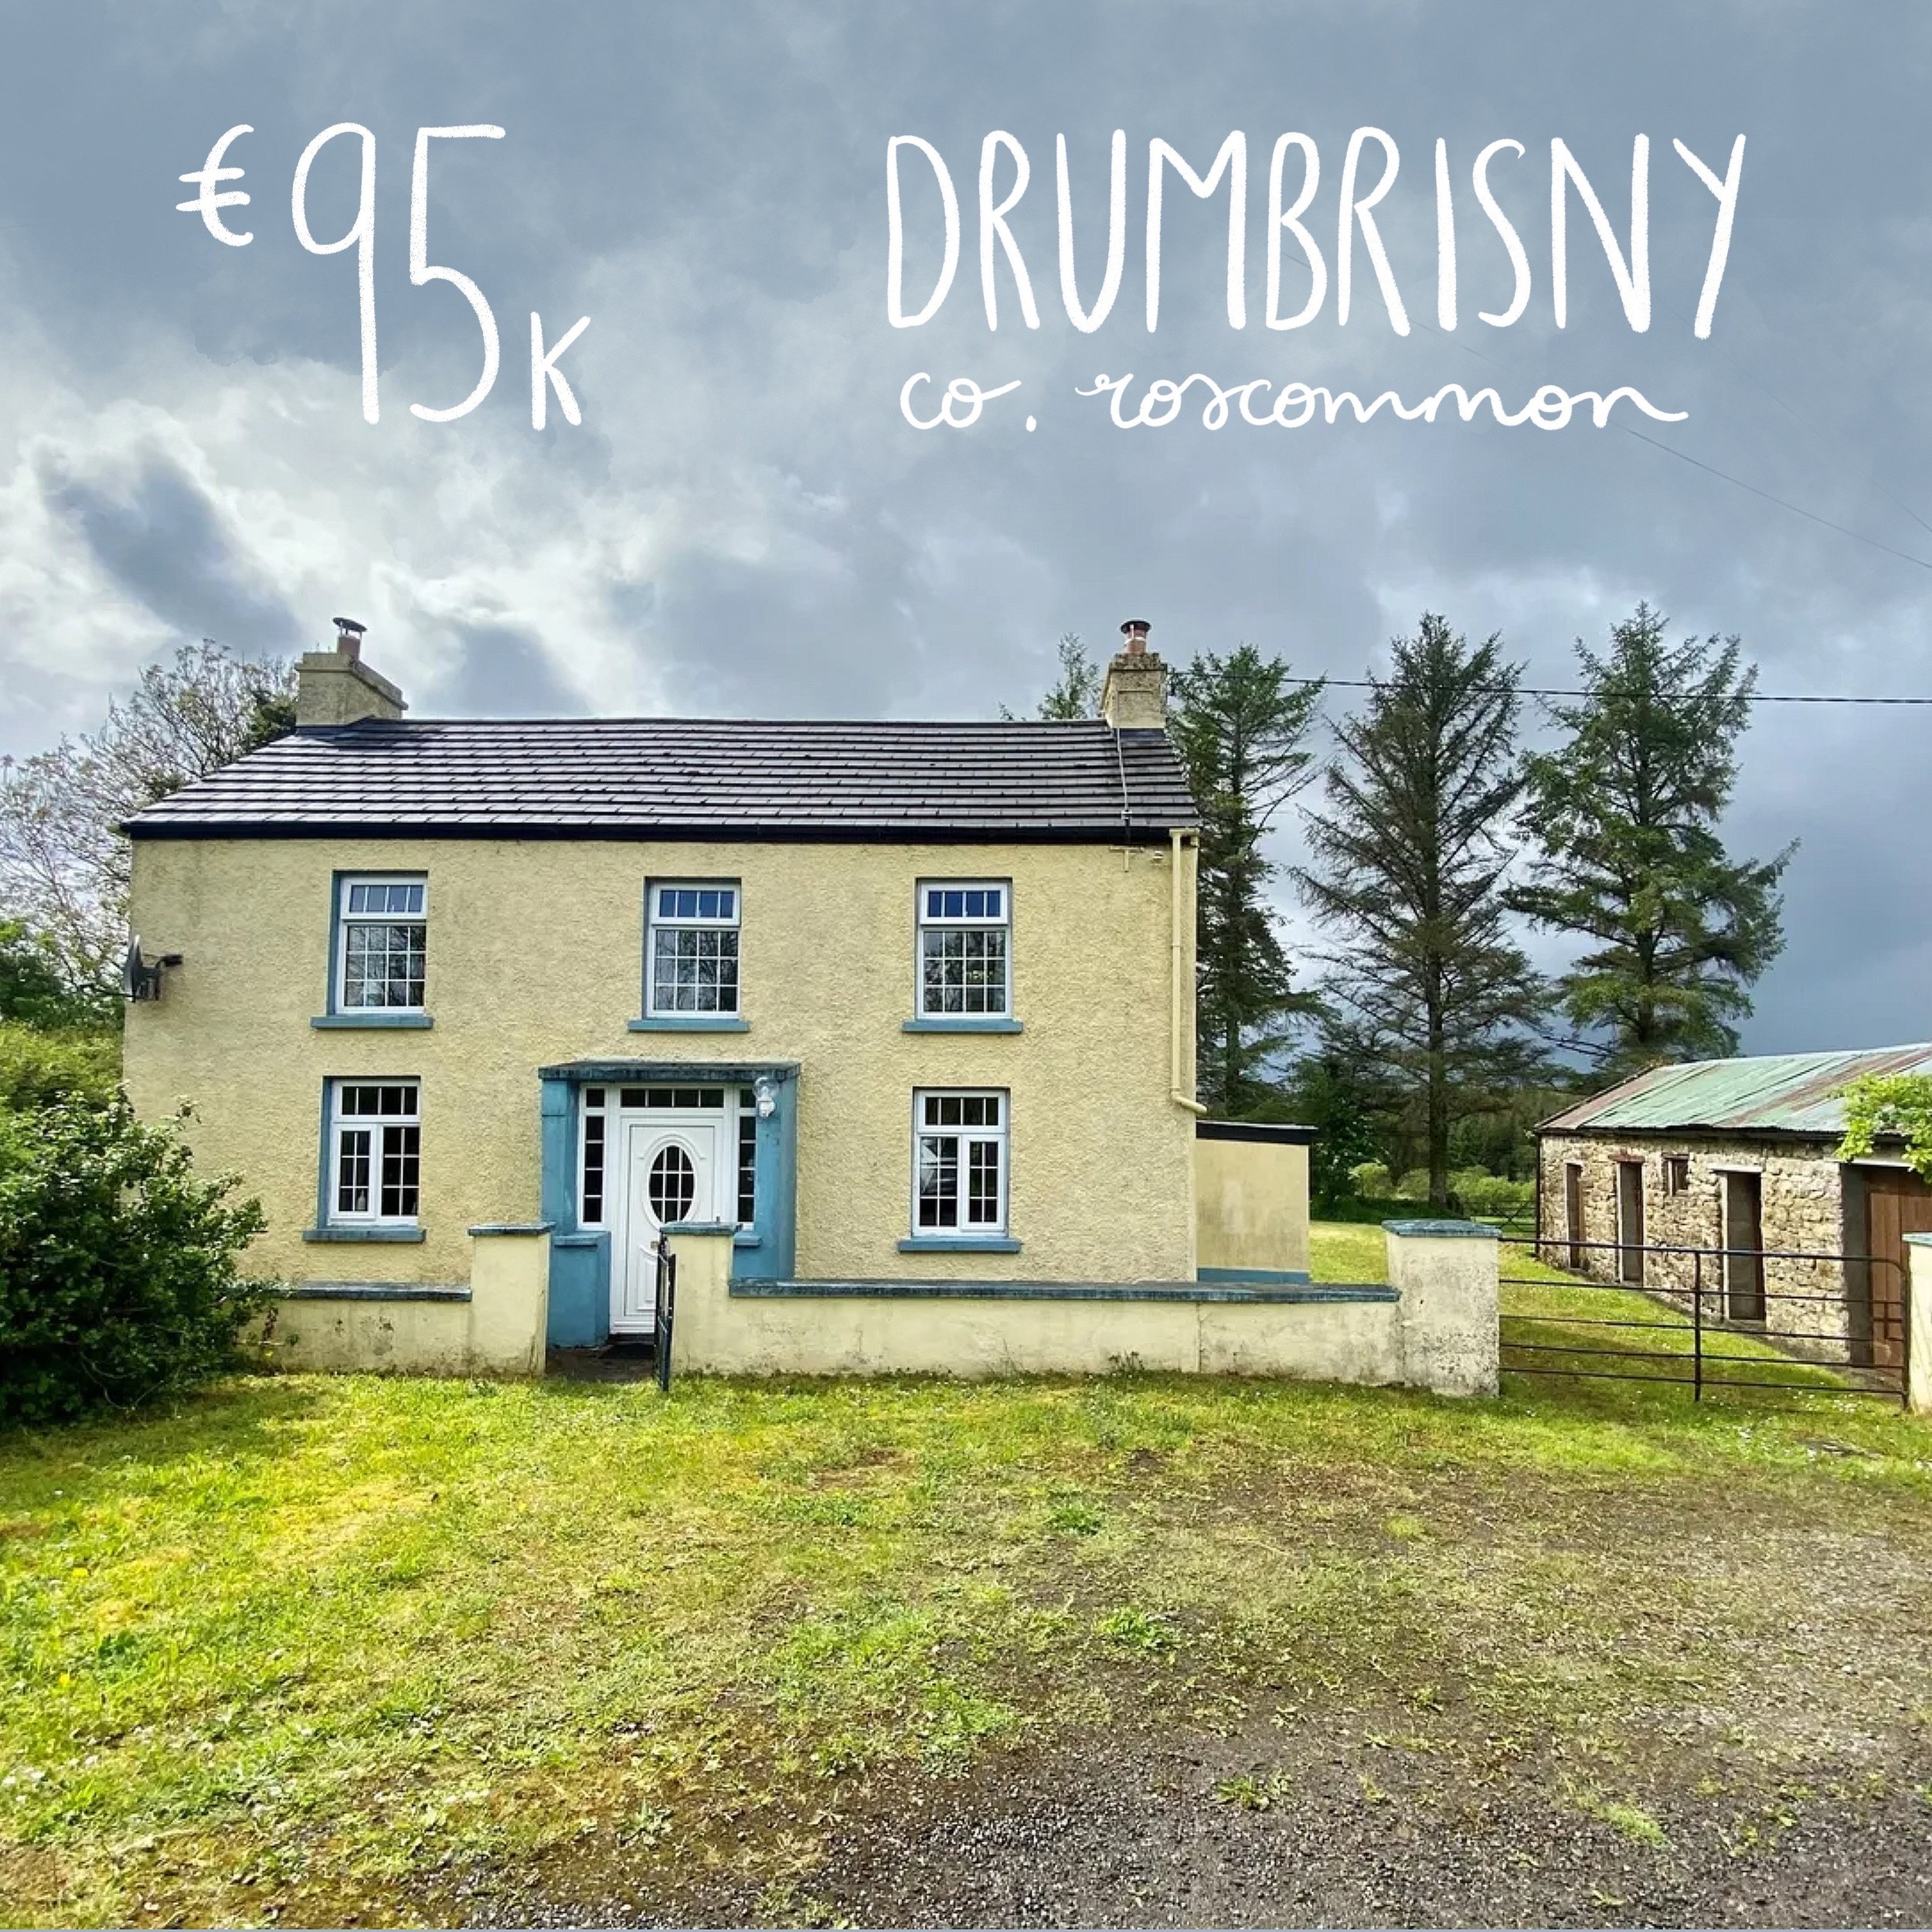 Drumbrisny, Carrick-on-Shannon, Co. Roscommon. €95k